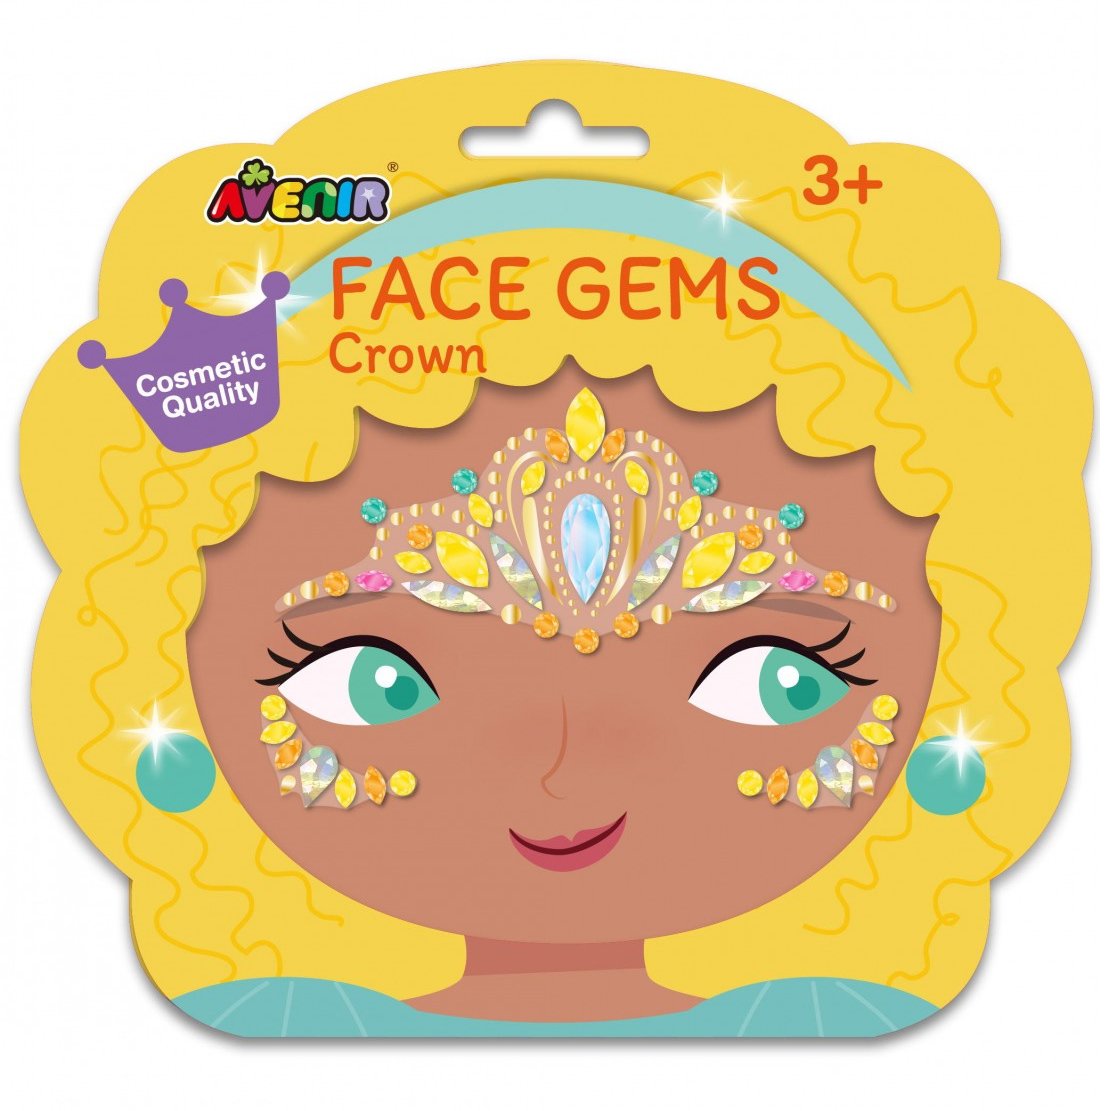 Avenir Face Gems Crown Παιδικά Αυτοκόλλητα με Strass για το Πρόσωπο 3+ Years 1 Τεμάχιο 51925